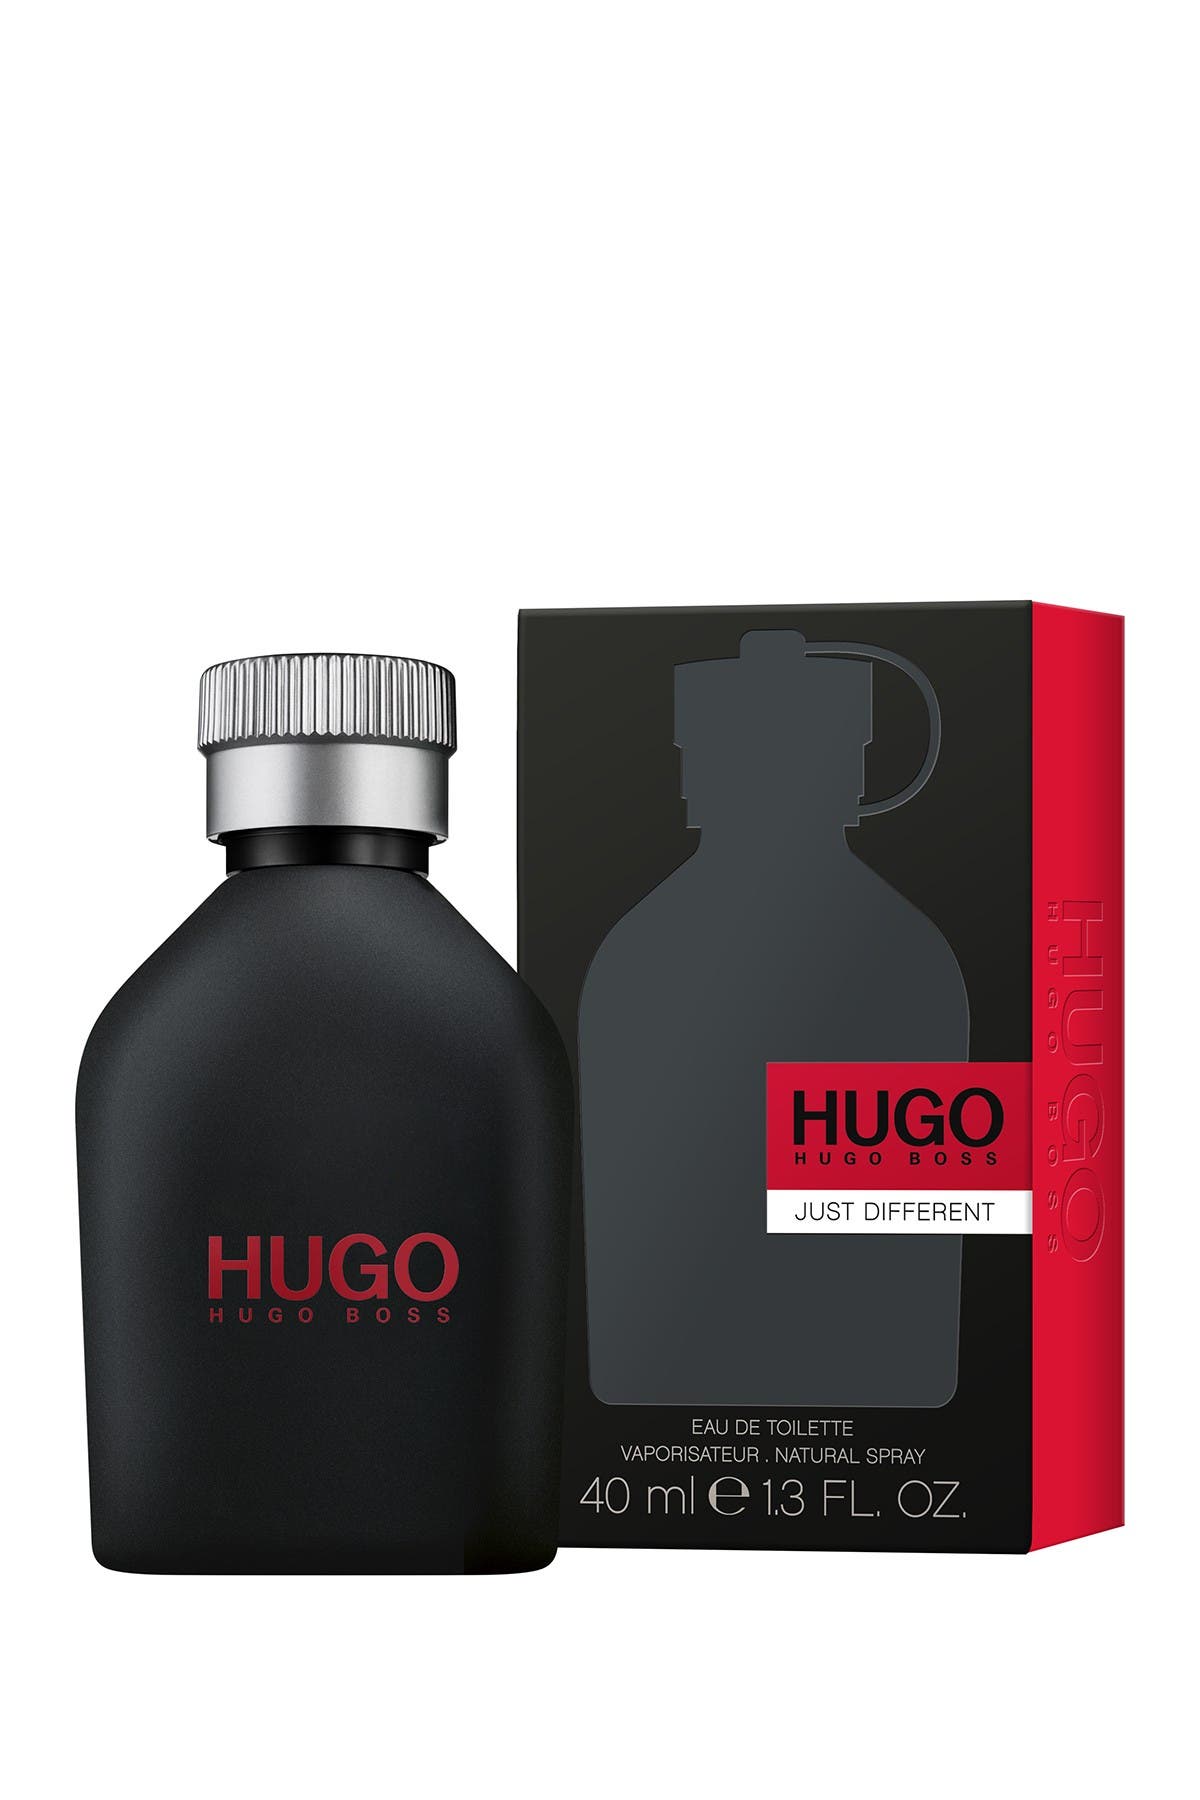 hugo boss 40ml eau toilette